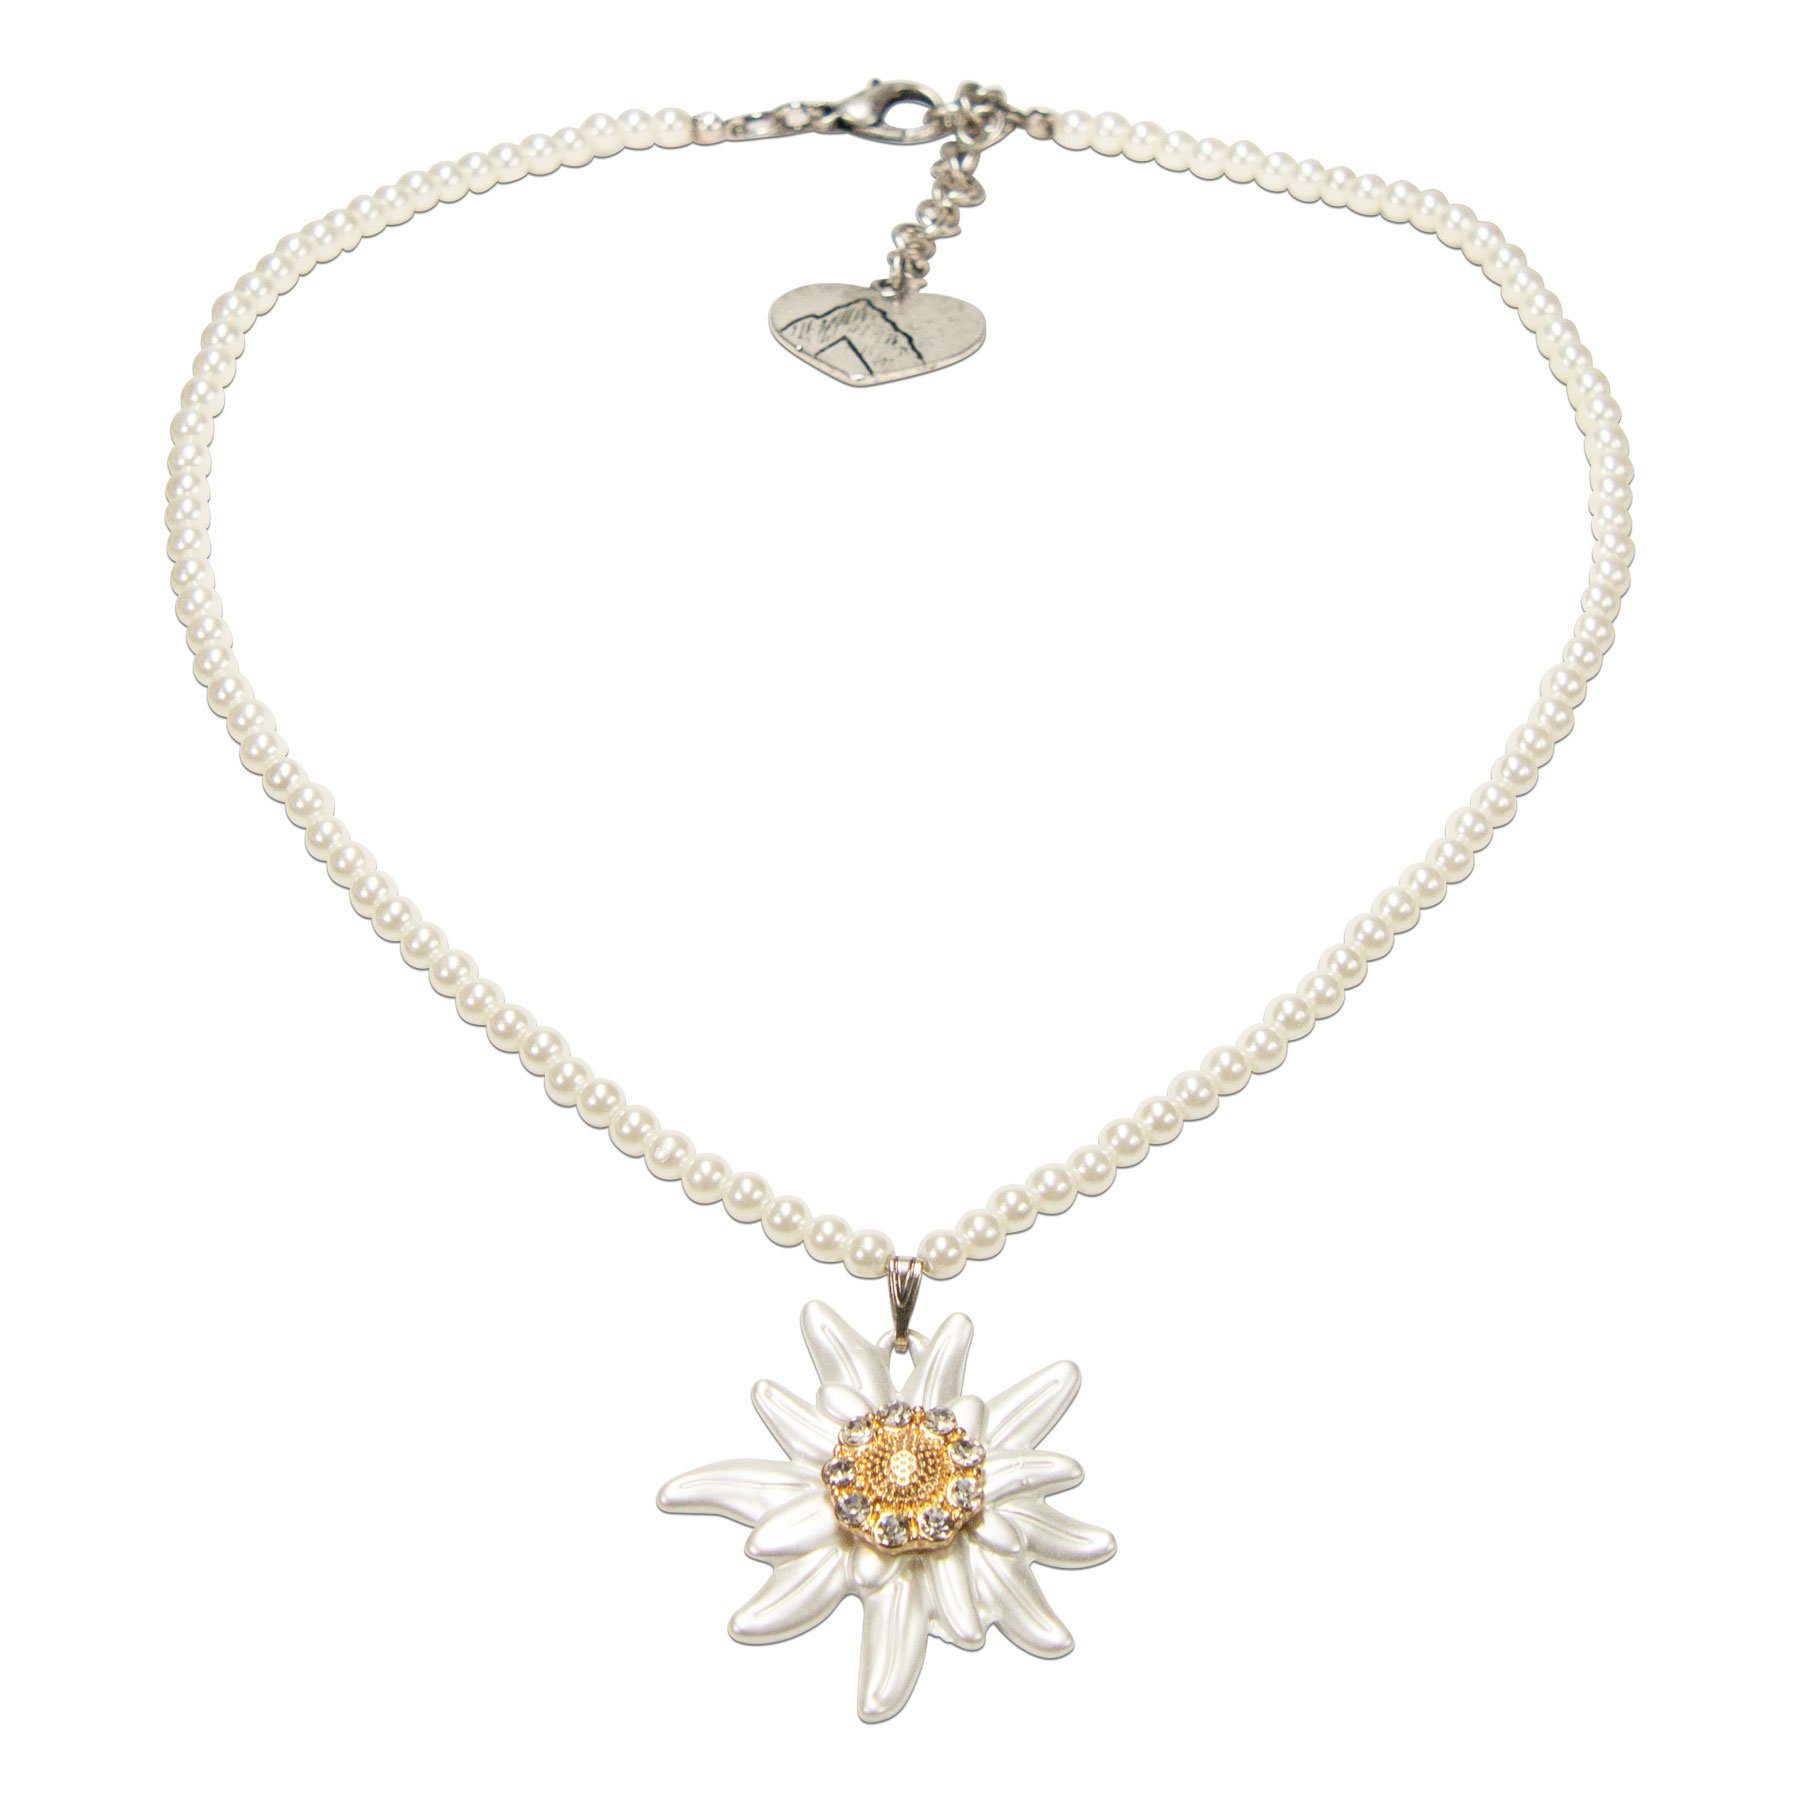 Alpenflüstern Collier Perlen-Trachtenkette Greta mit Strass-Edelweiß groß (creme-weiß), - Damen-Trachtenschmuck Dirndlkette